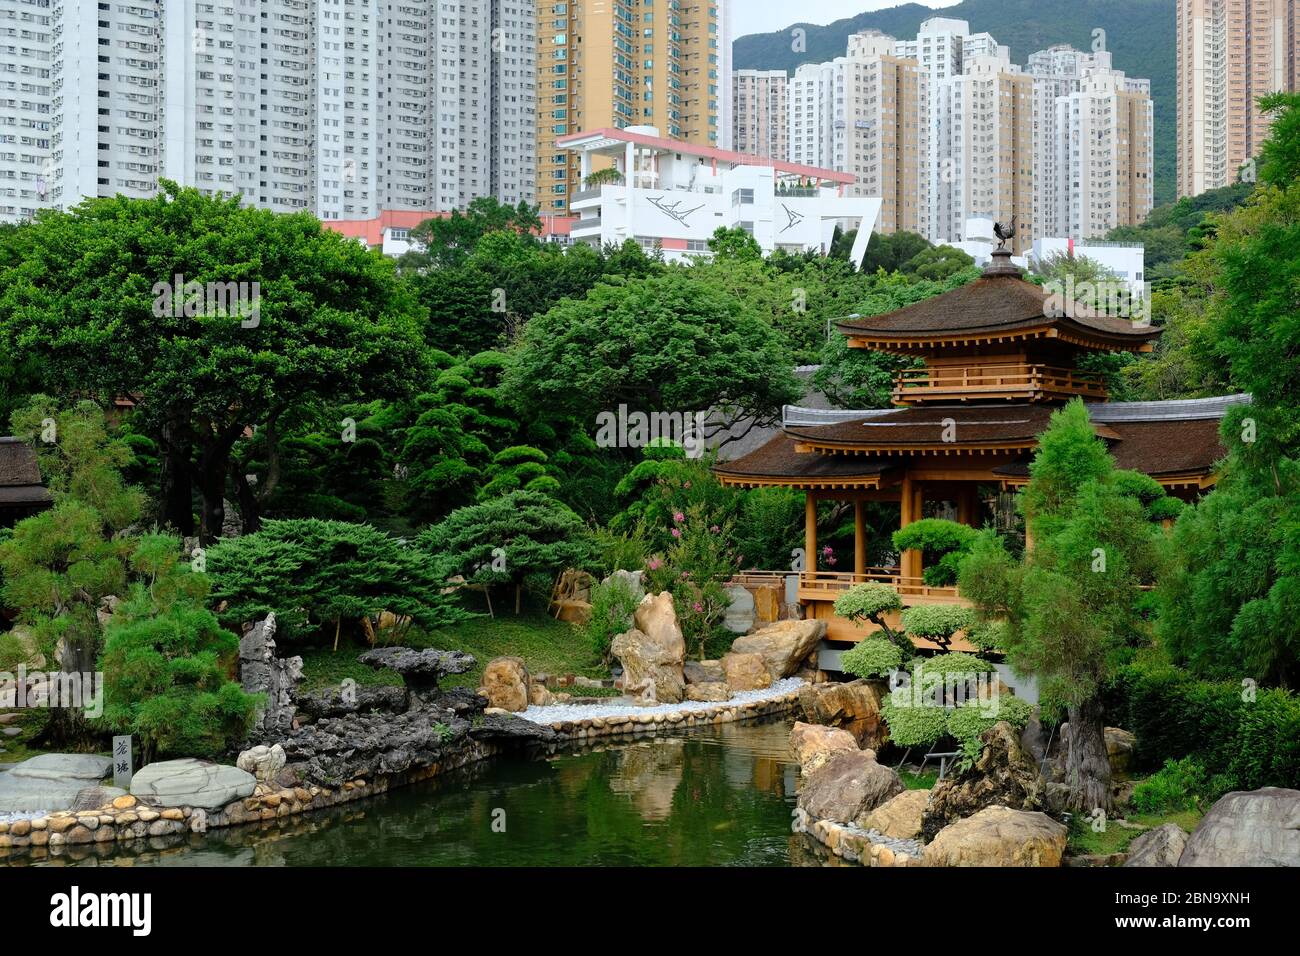 Hong Kong China - Nan Lian Garden panoramic view Stock Photo